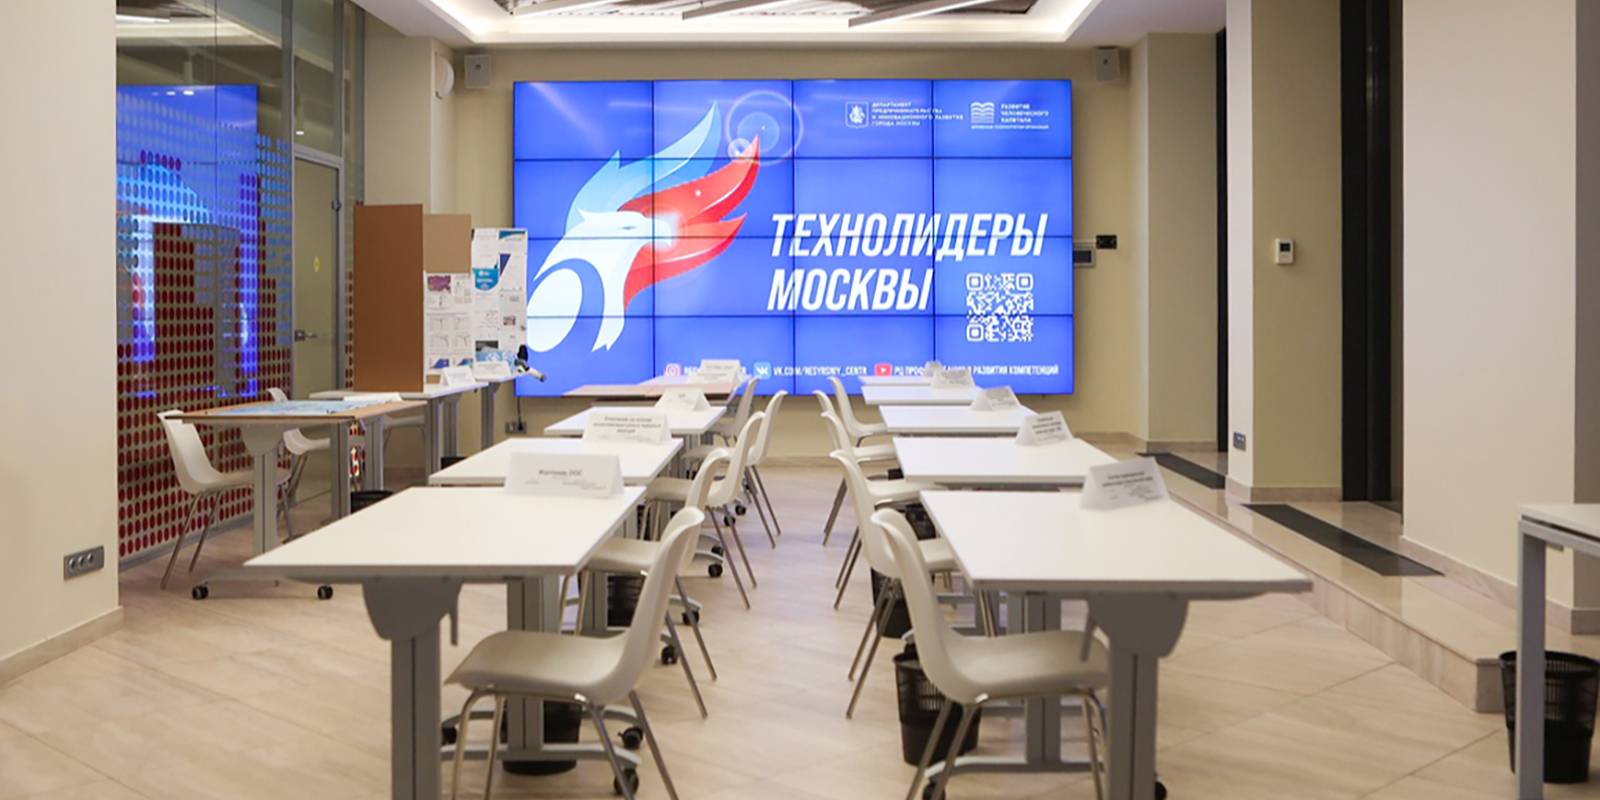 Юные изобретатели презентуют свои разработки инвесторам в Москве